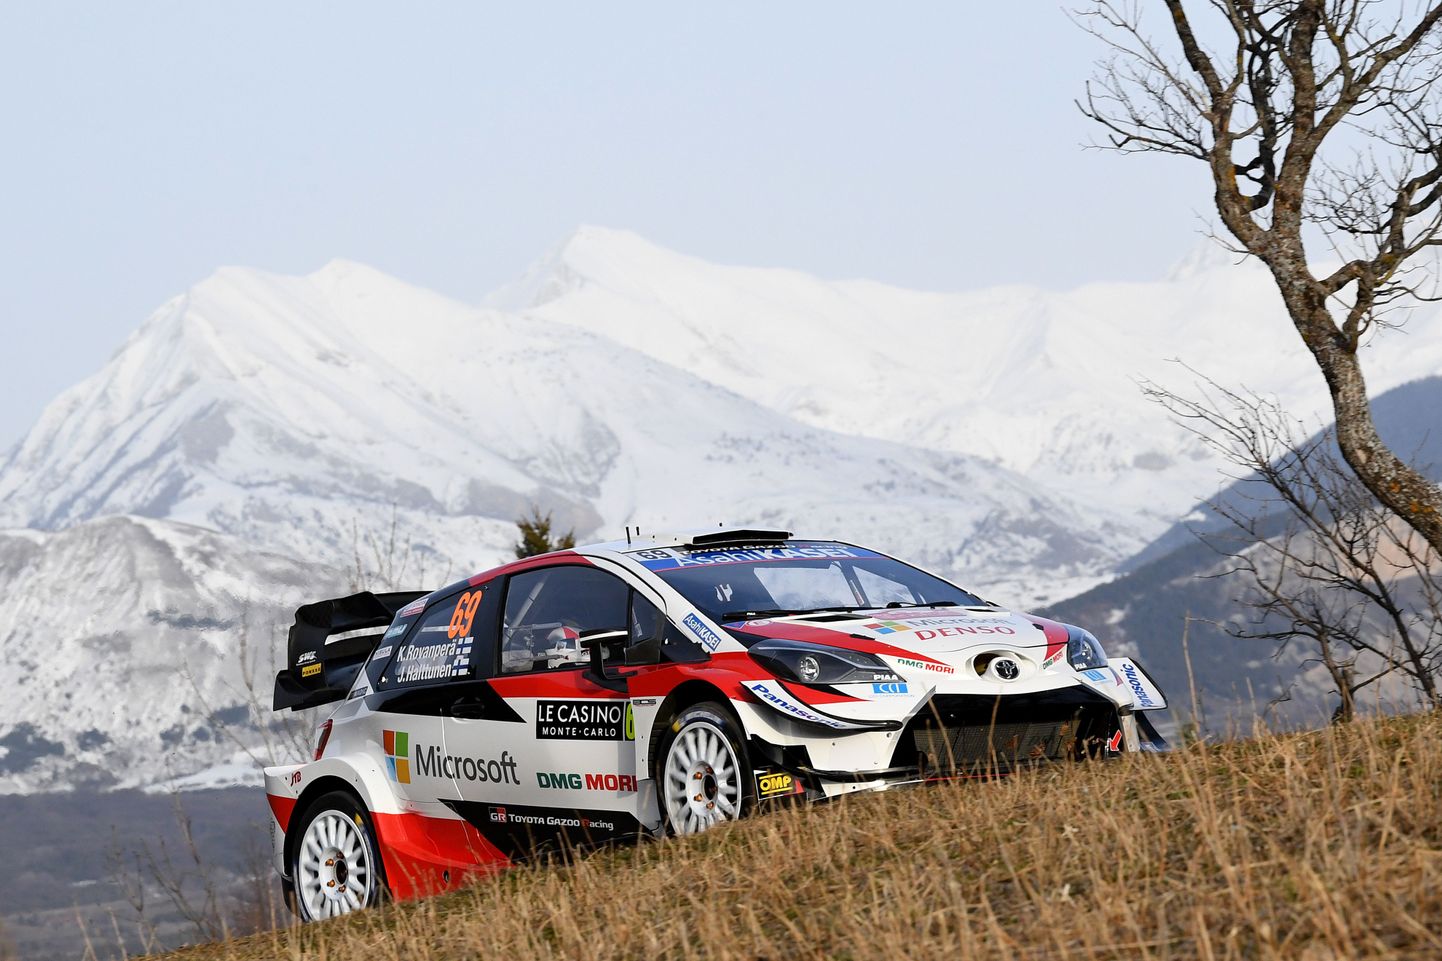 Soome ralliäss Kalle Rovanperä Toyota Yaris WRC-l Monte Carlo ralli avakatsel.